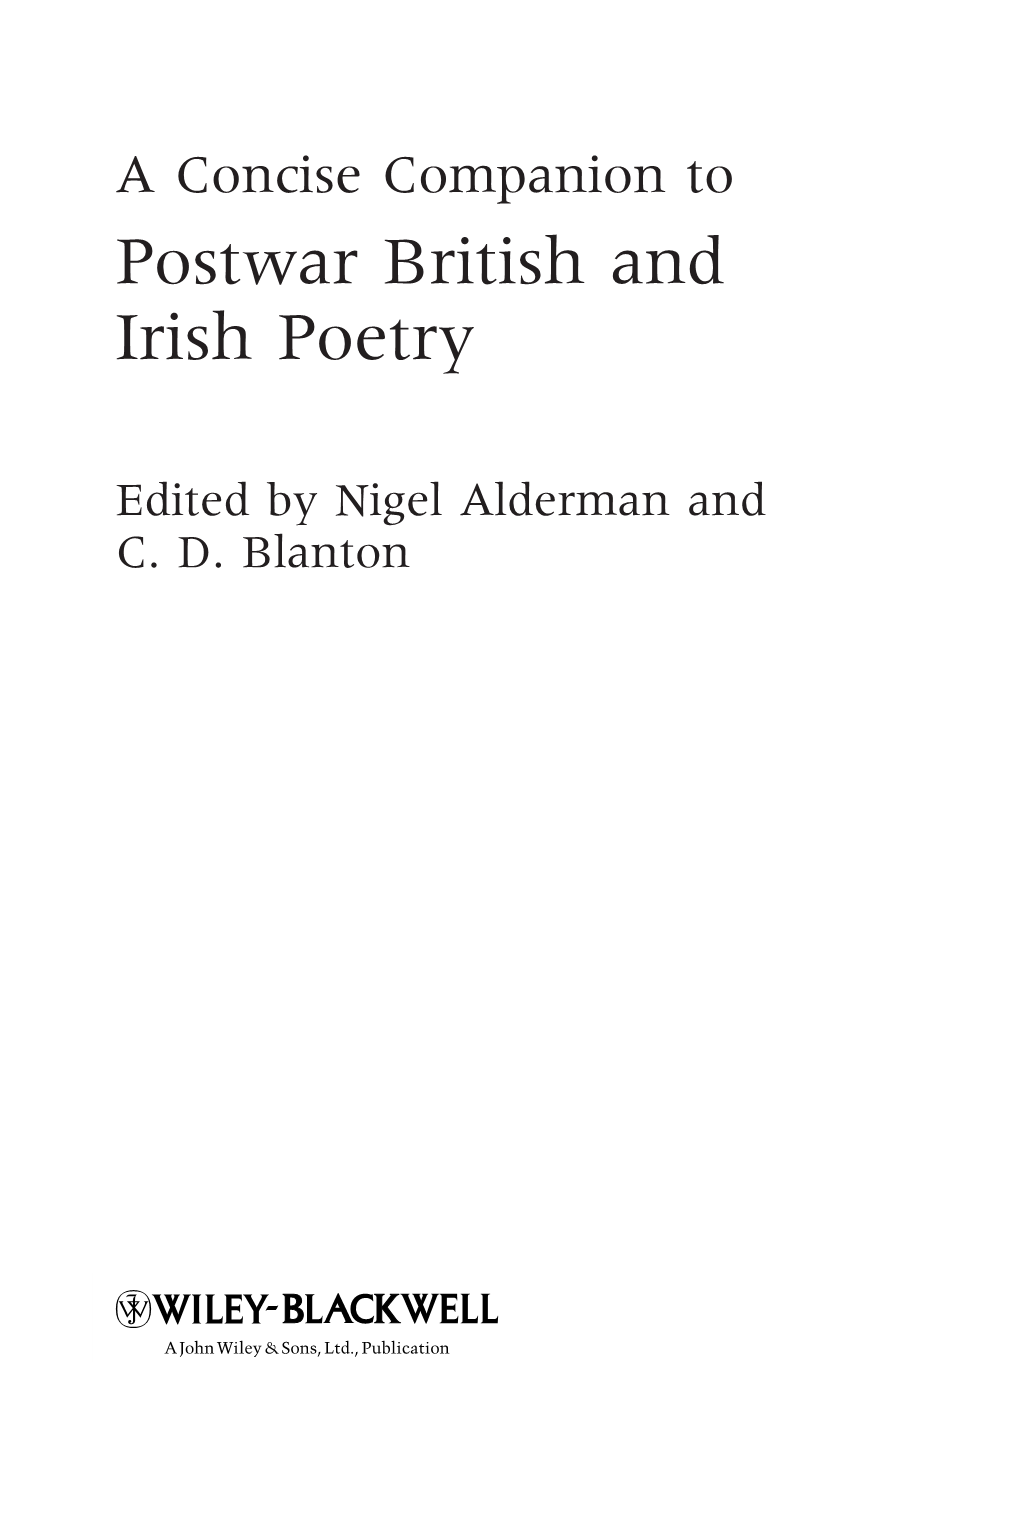 Postwar British and Irish Poetry